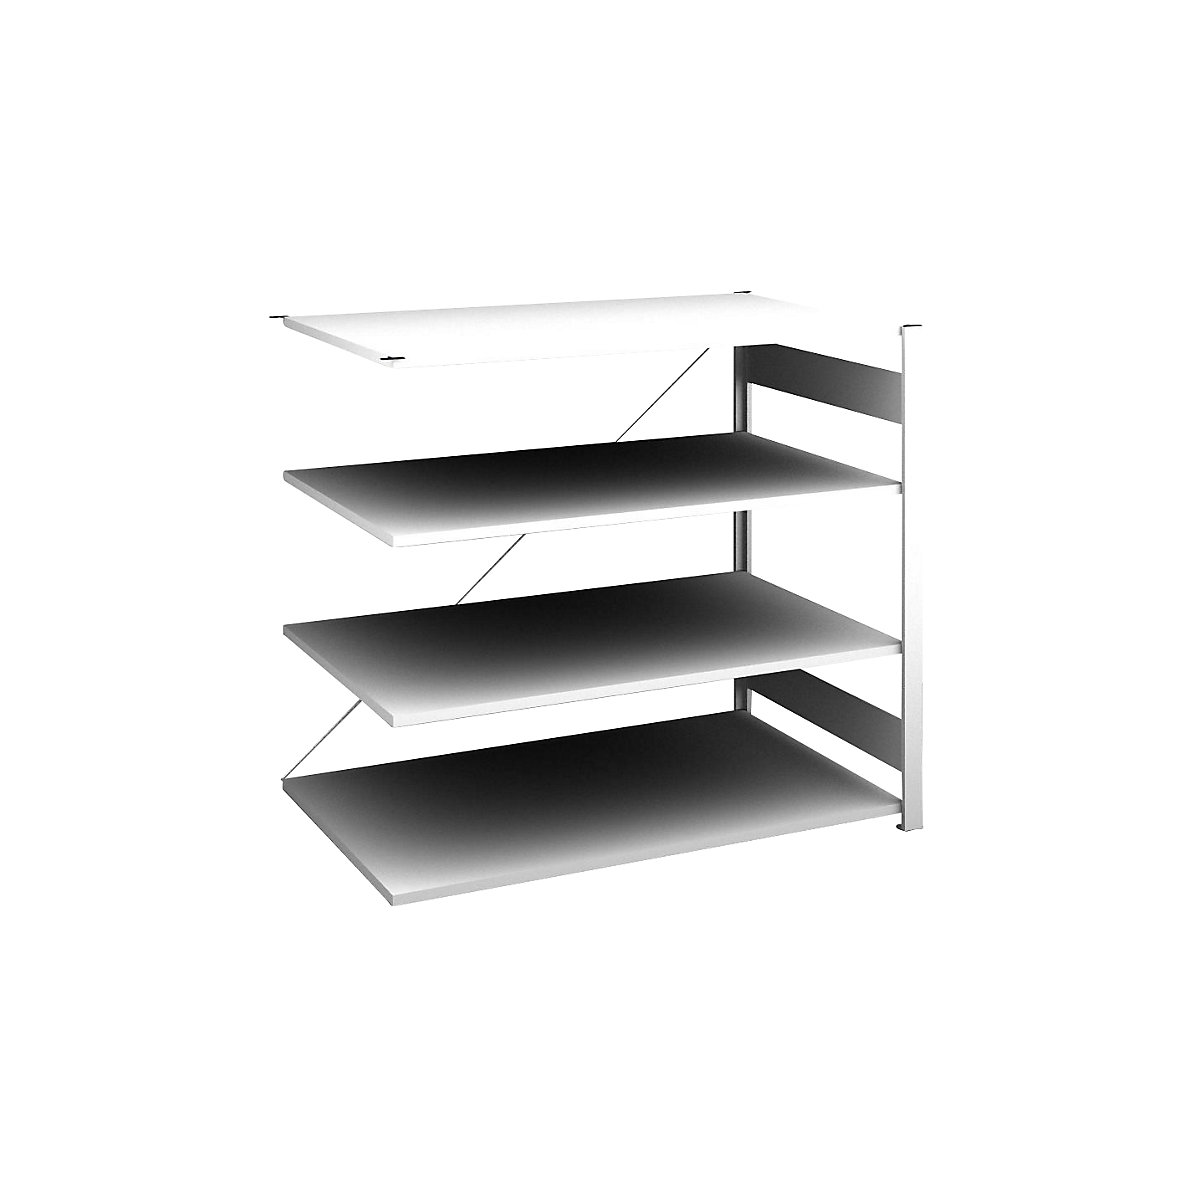 Sideboard shelving unit, light grey – hofe, height 1200 mm, 4 shelves, extension shelf unit, shelf depth 800 mm, max. shelf load 190 kg-4